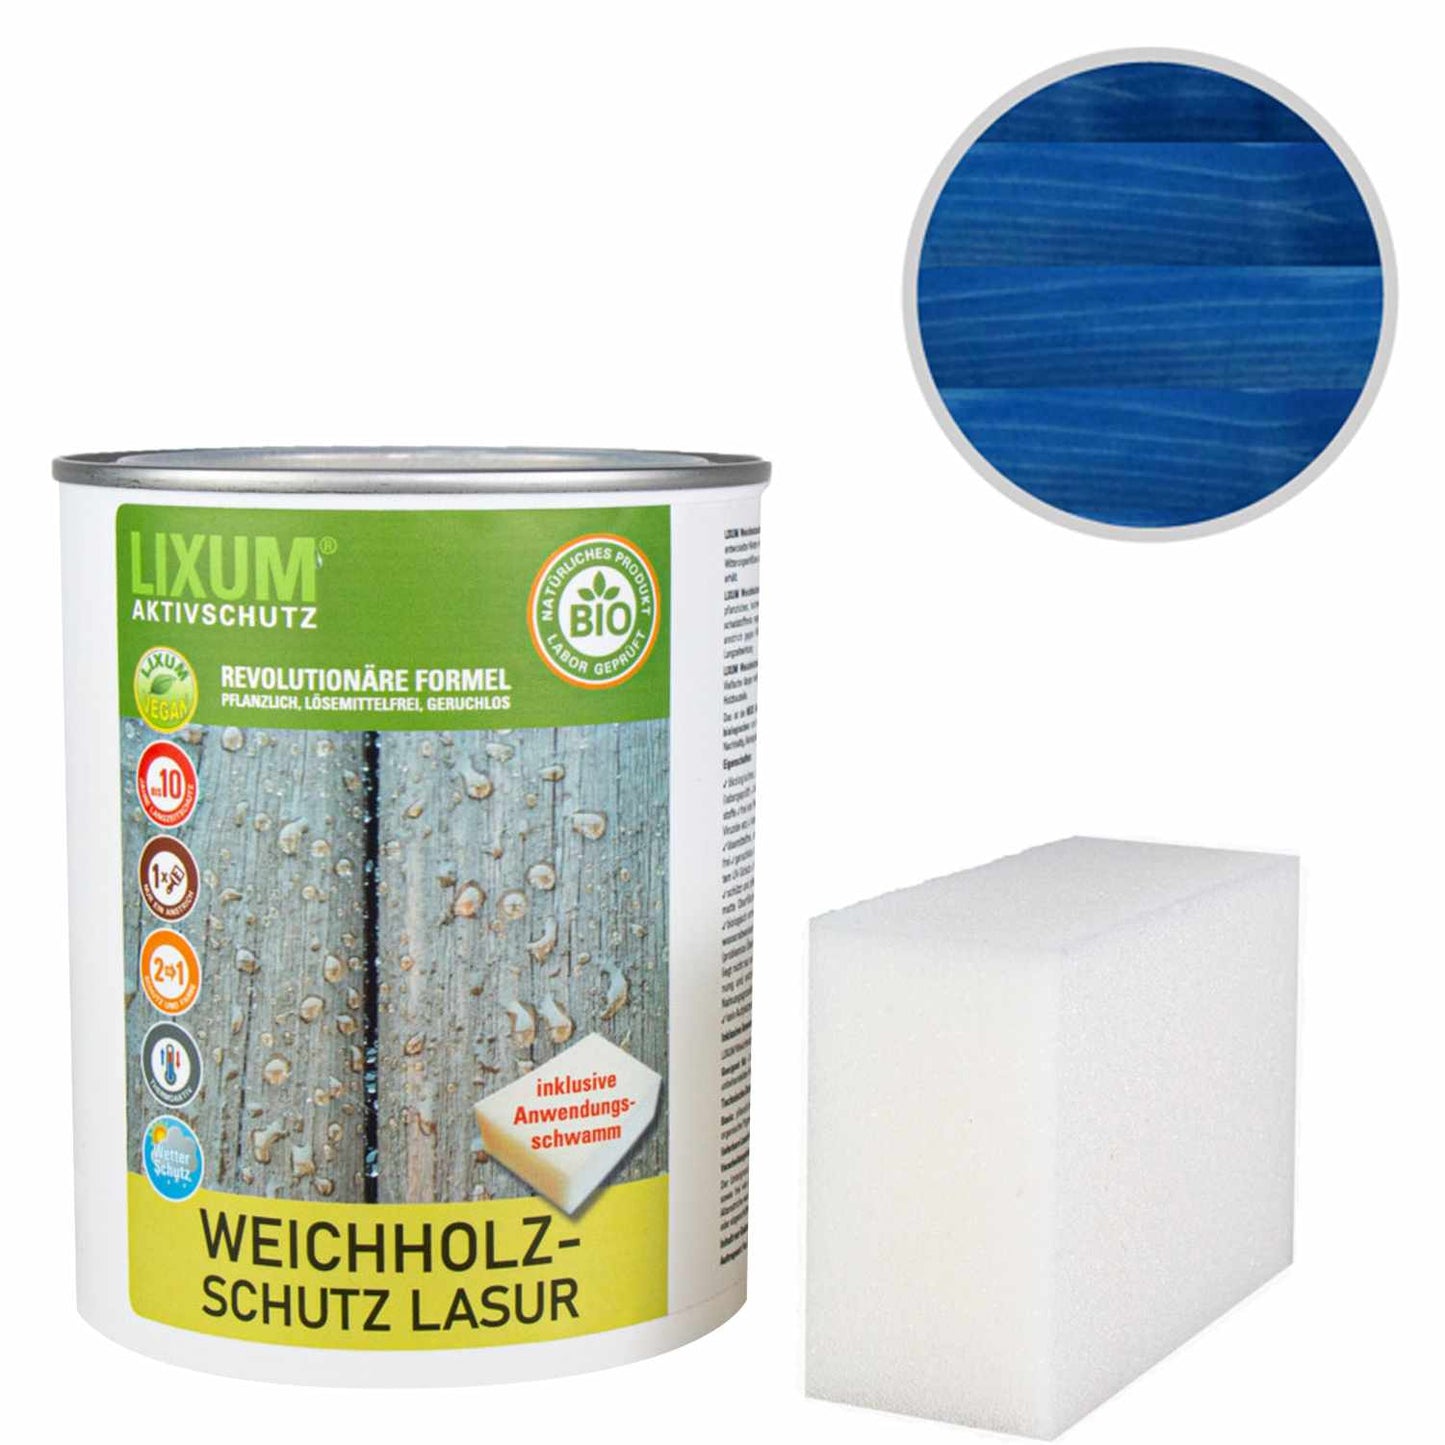 Glassa di protezione delle legno del legno biologico - Poplar - protezione del legno e cura del legno per l'esterno